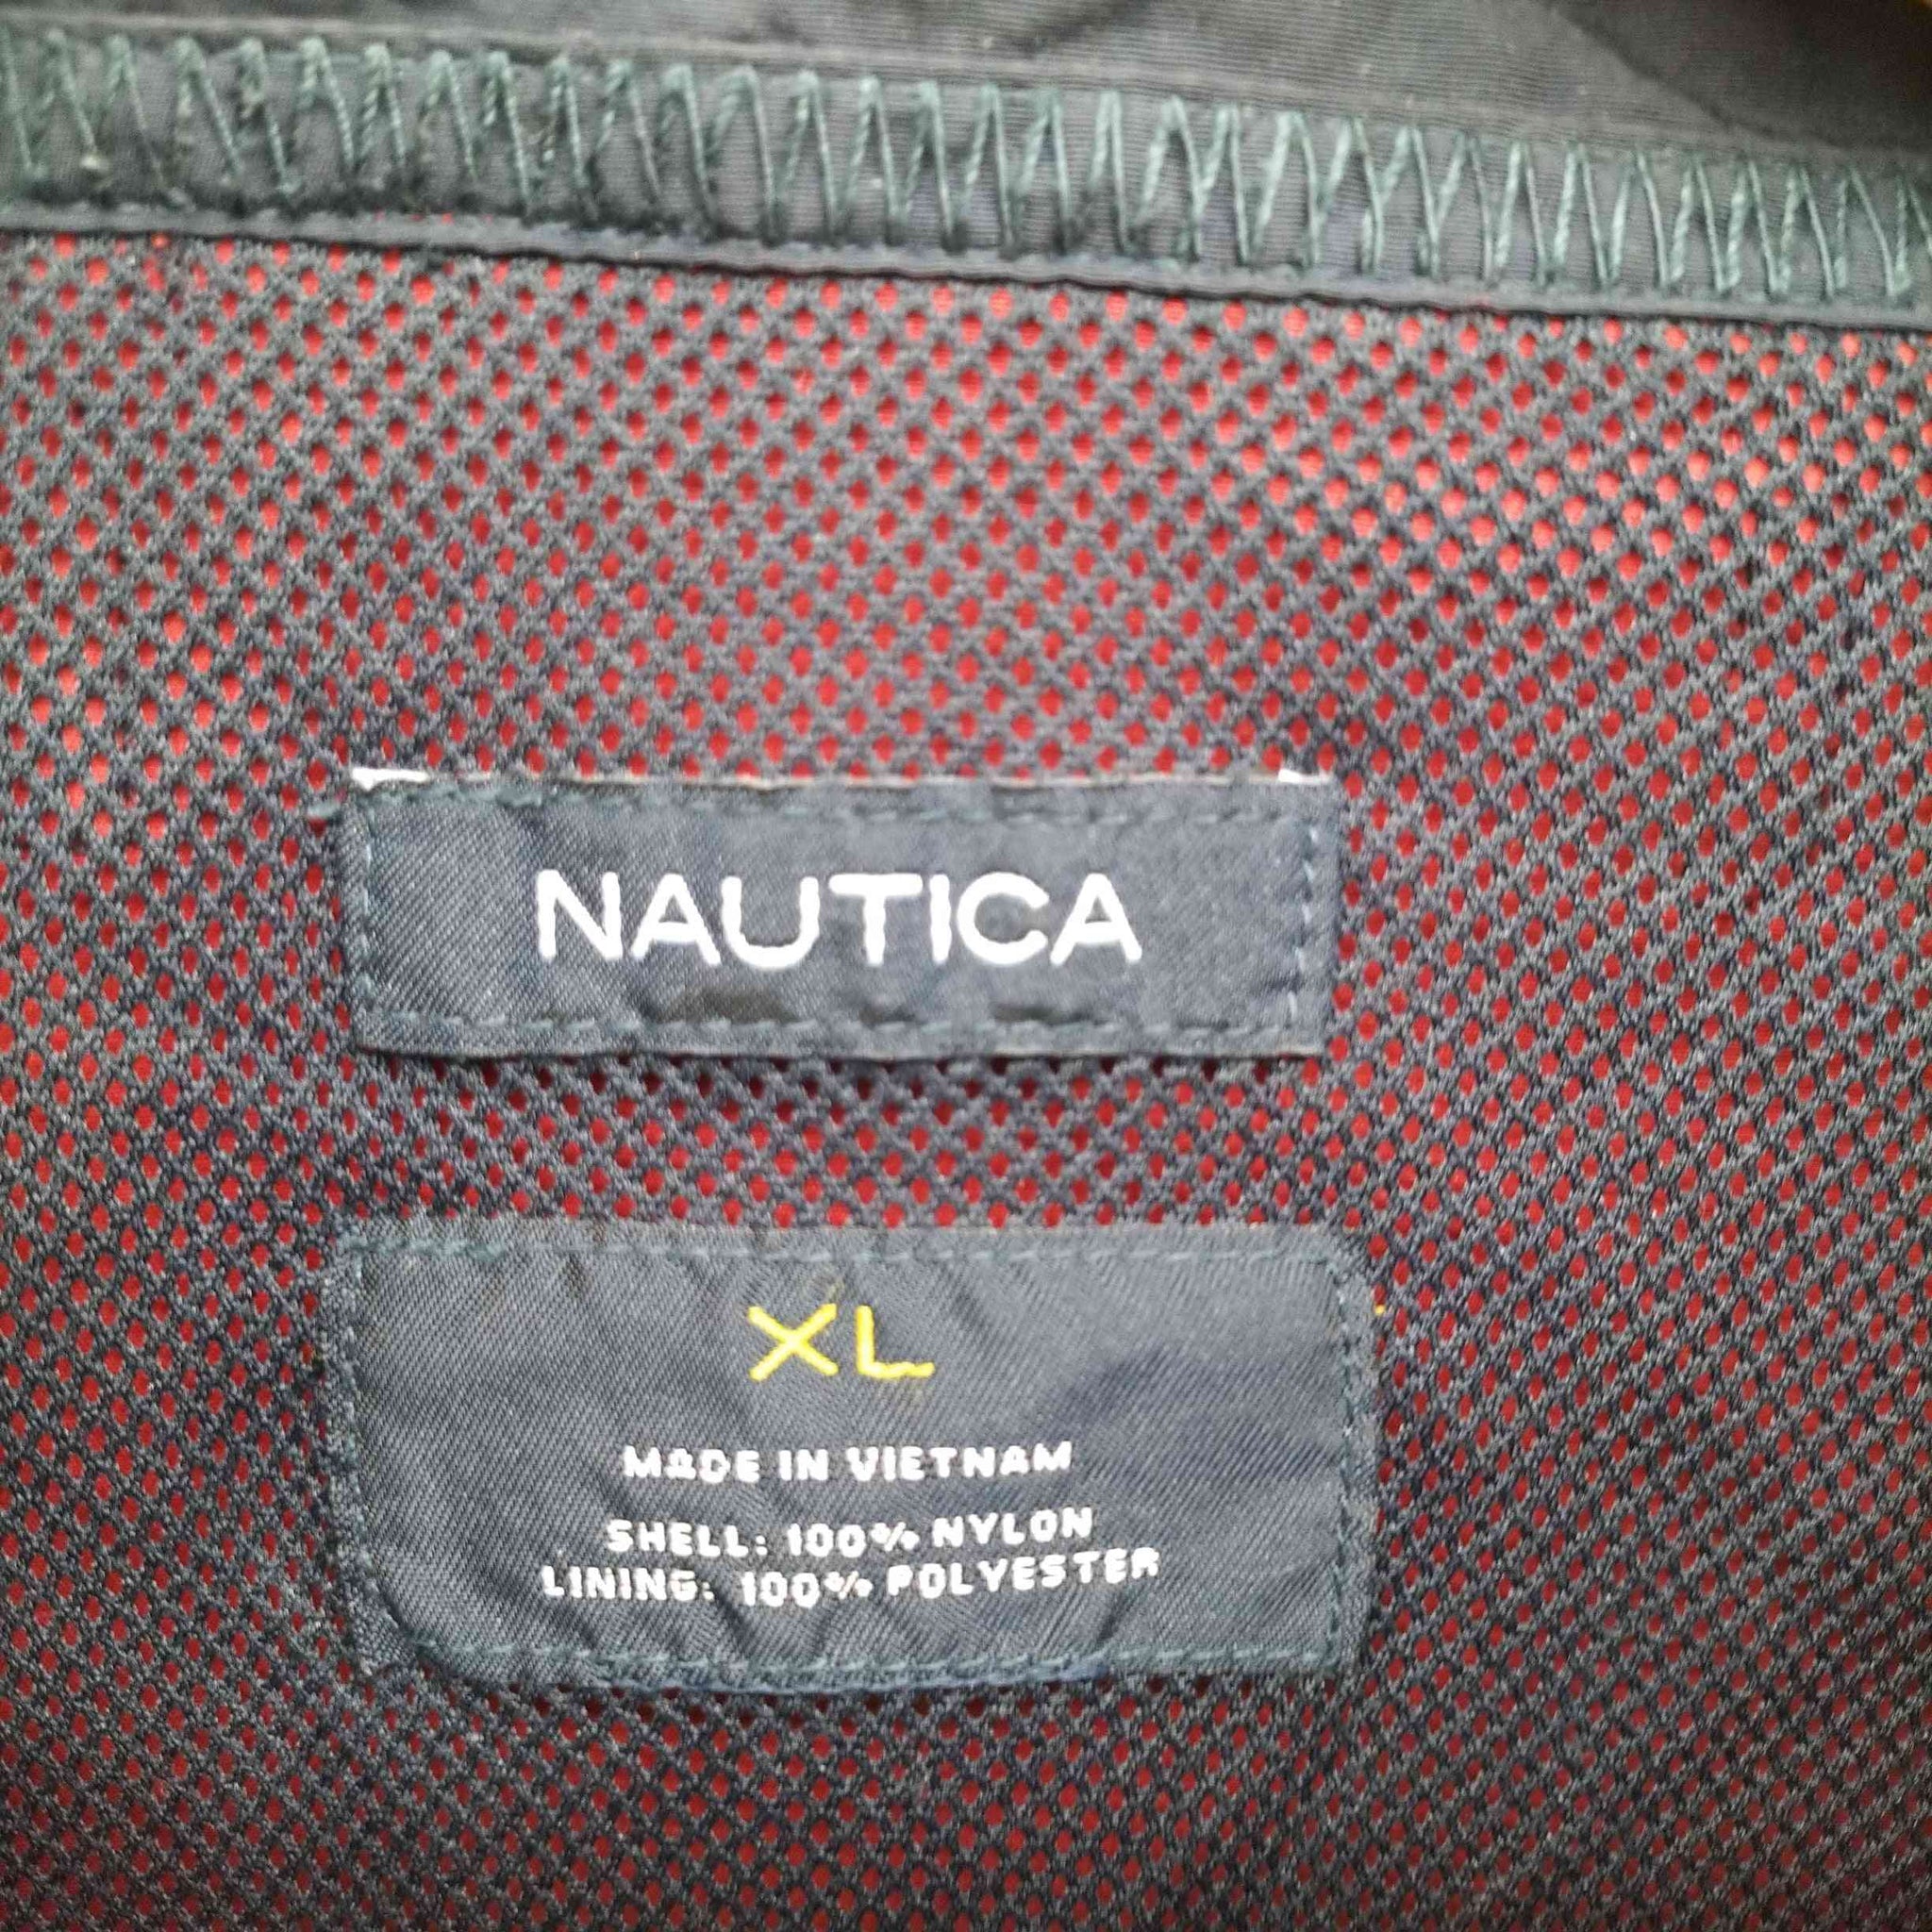 NAUTICA(ノーティカ)NS-83 裏地メッシュ パッカブル フード サイドテープ ロゴ刺繍 ナイロン ジャケット